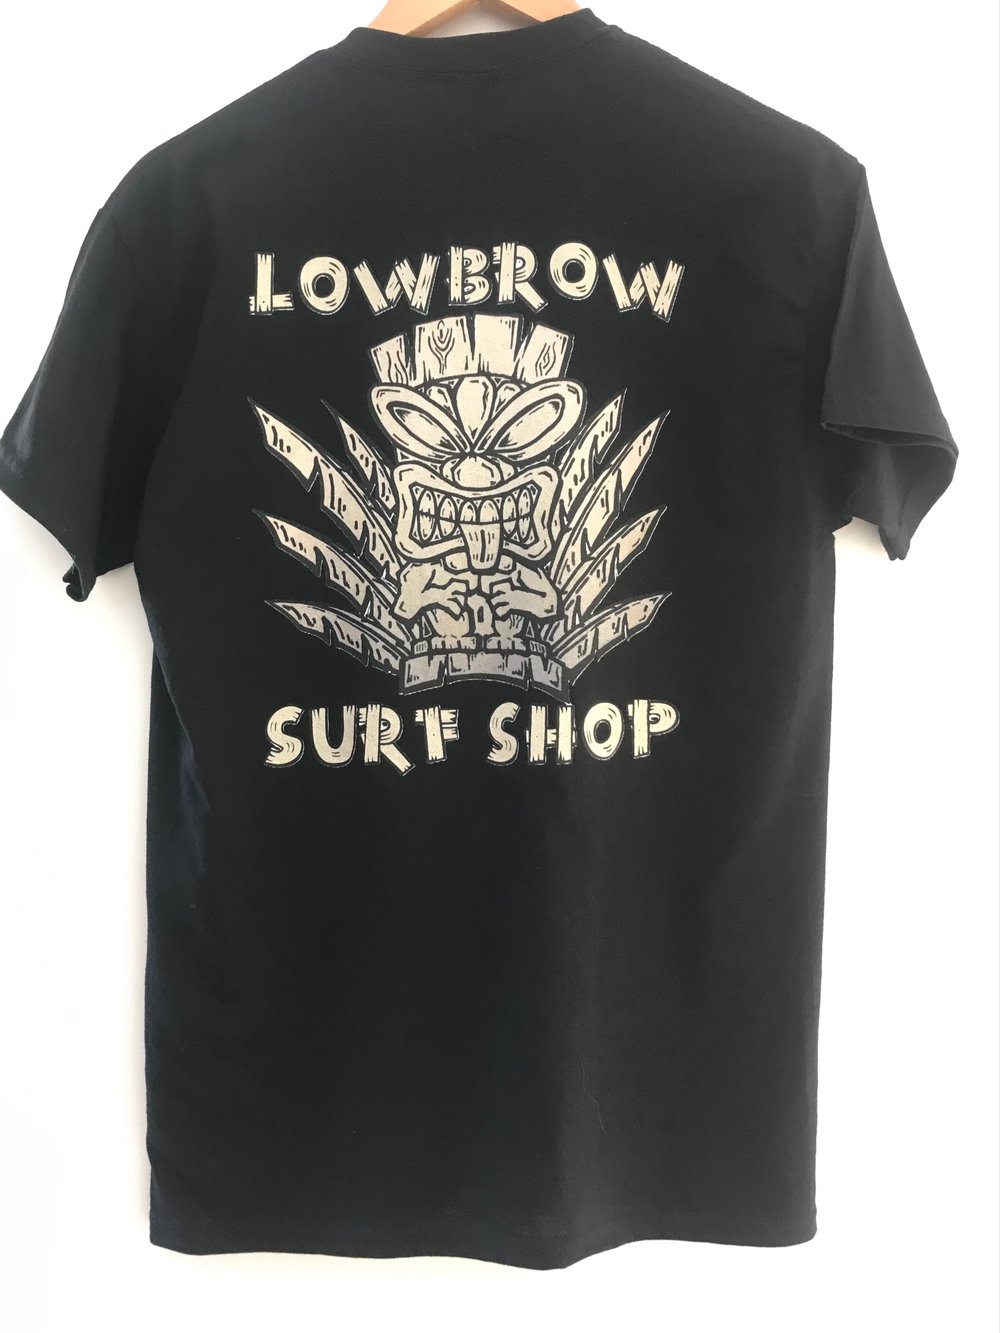 Lowbrow tiki man T-shirt black 